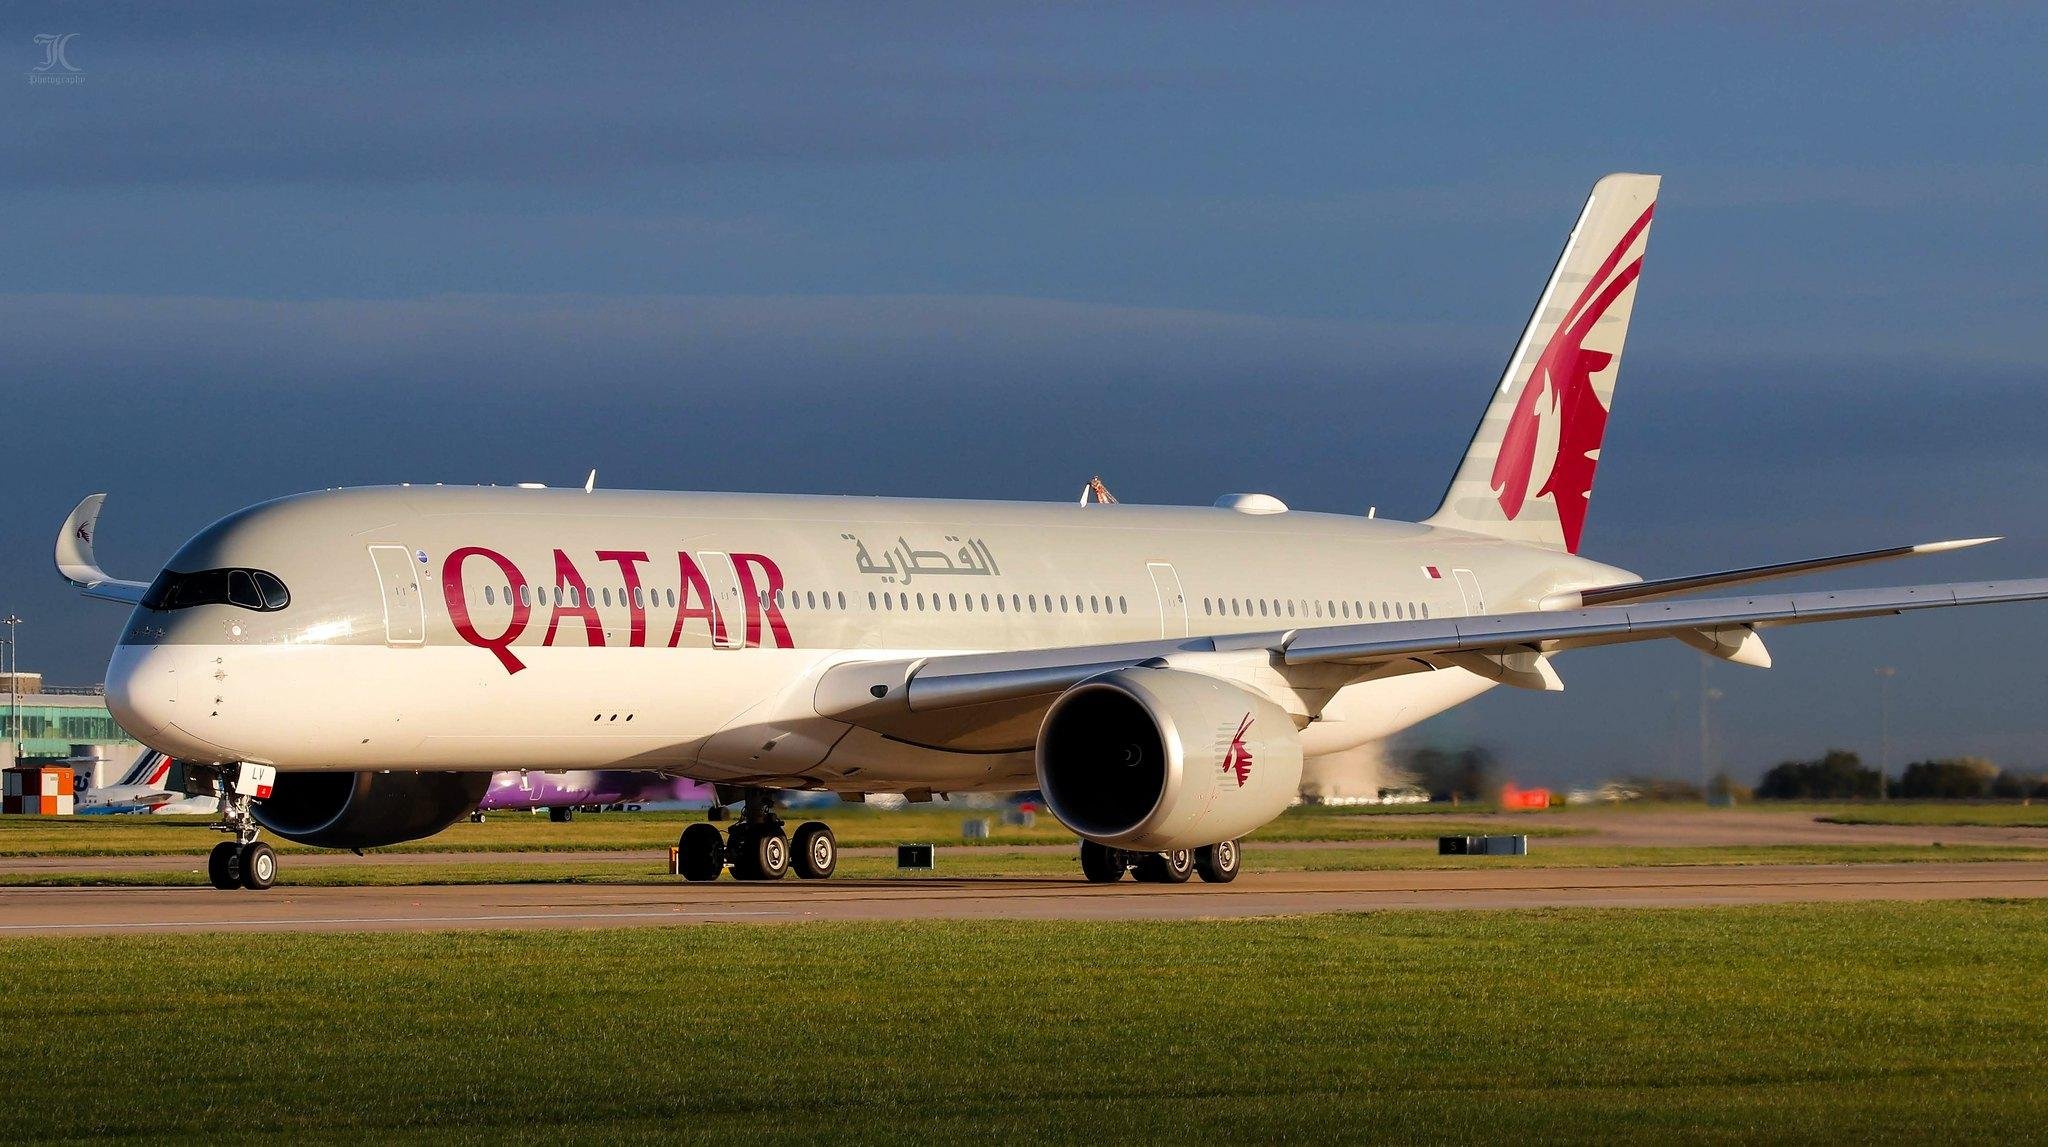  Grecia a prins 12 străini pozitivi veniți cu avionul Qatar la Atena